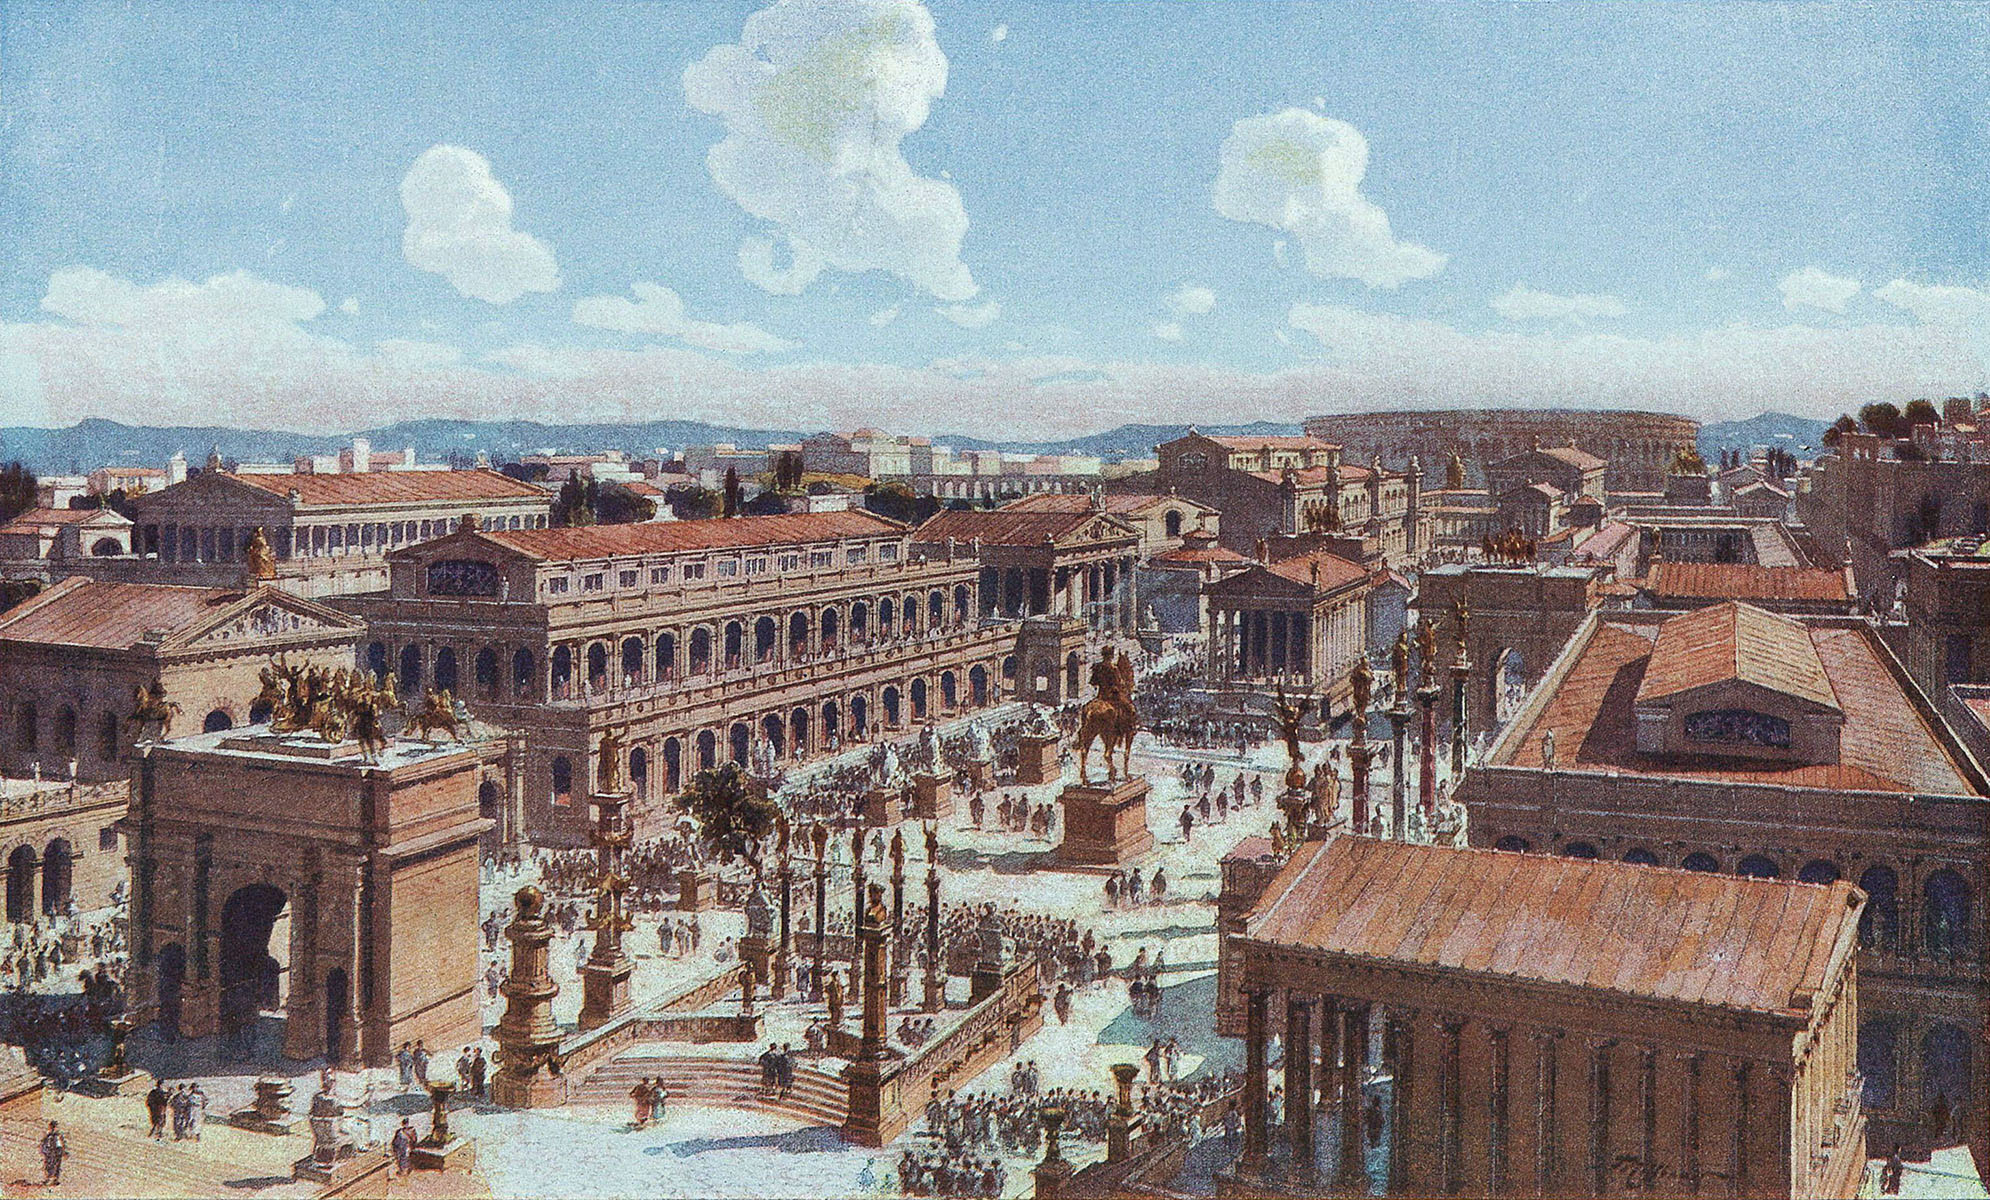 Древние времена до нашей эры. Рим город в древности. Древний Рим Империя 1в н.э.. Римская Империя город Рим. Империя античный Рим.